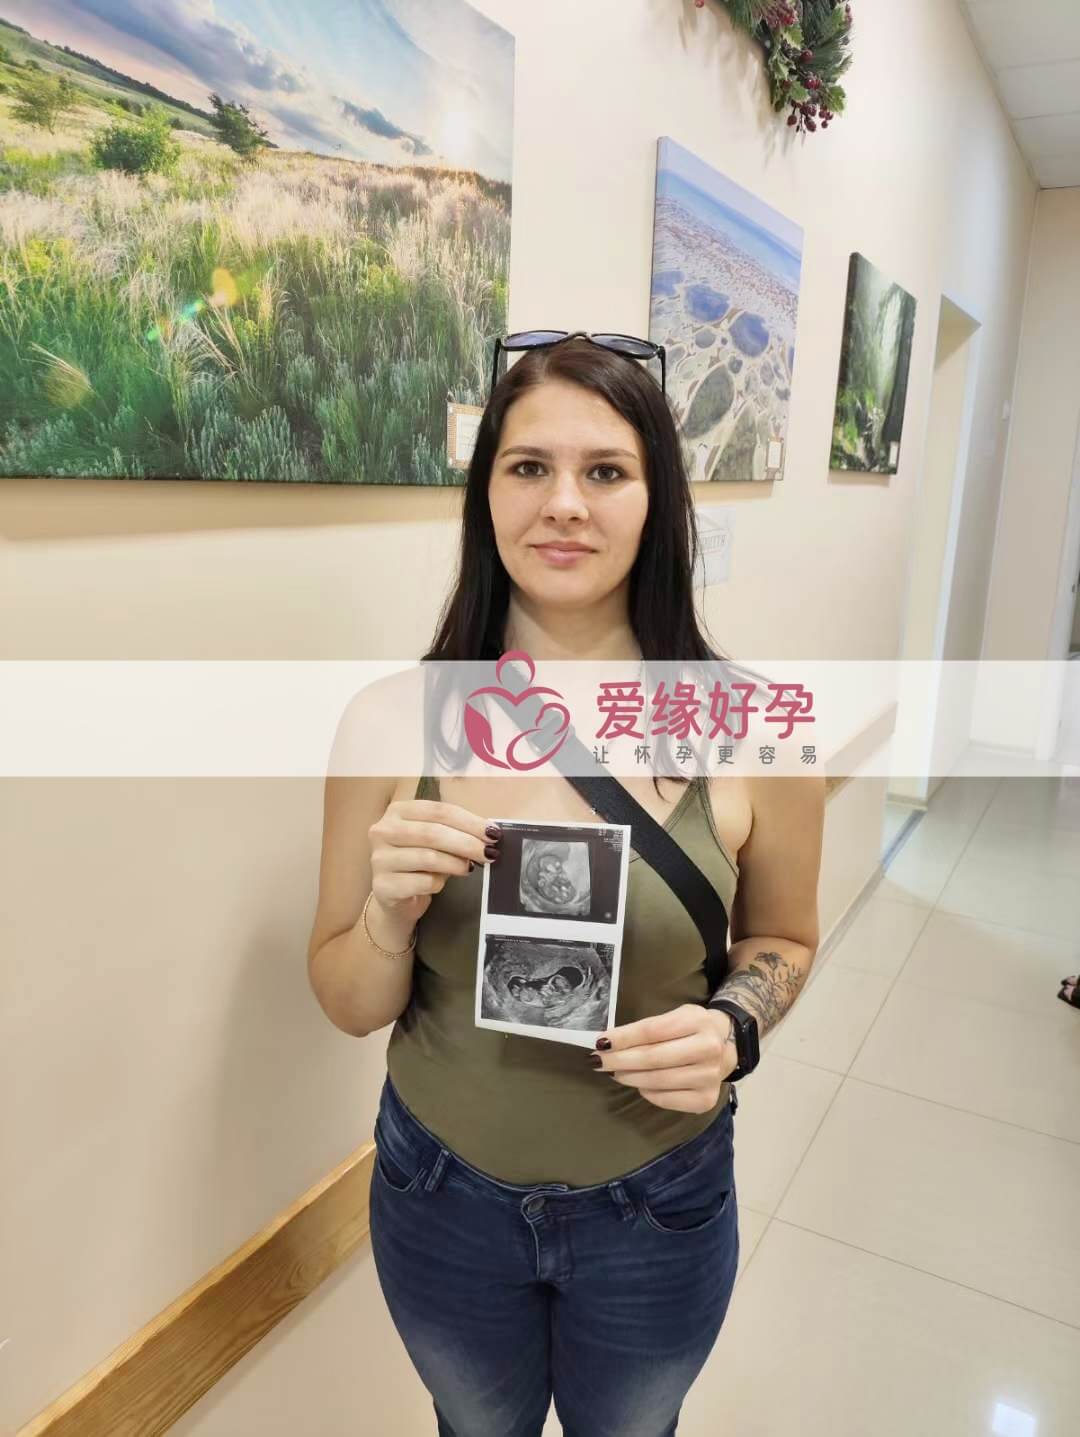 爱缘好孕:乌克兰爱心妈妈孕11周+5天产检顺利通过